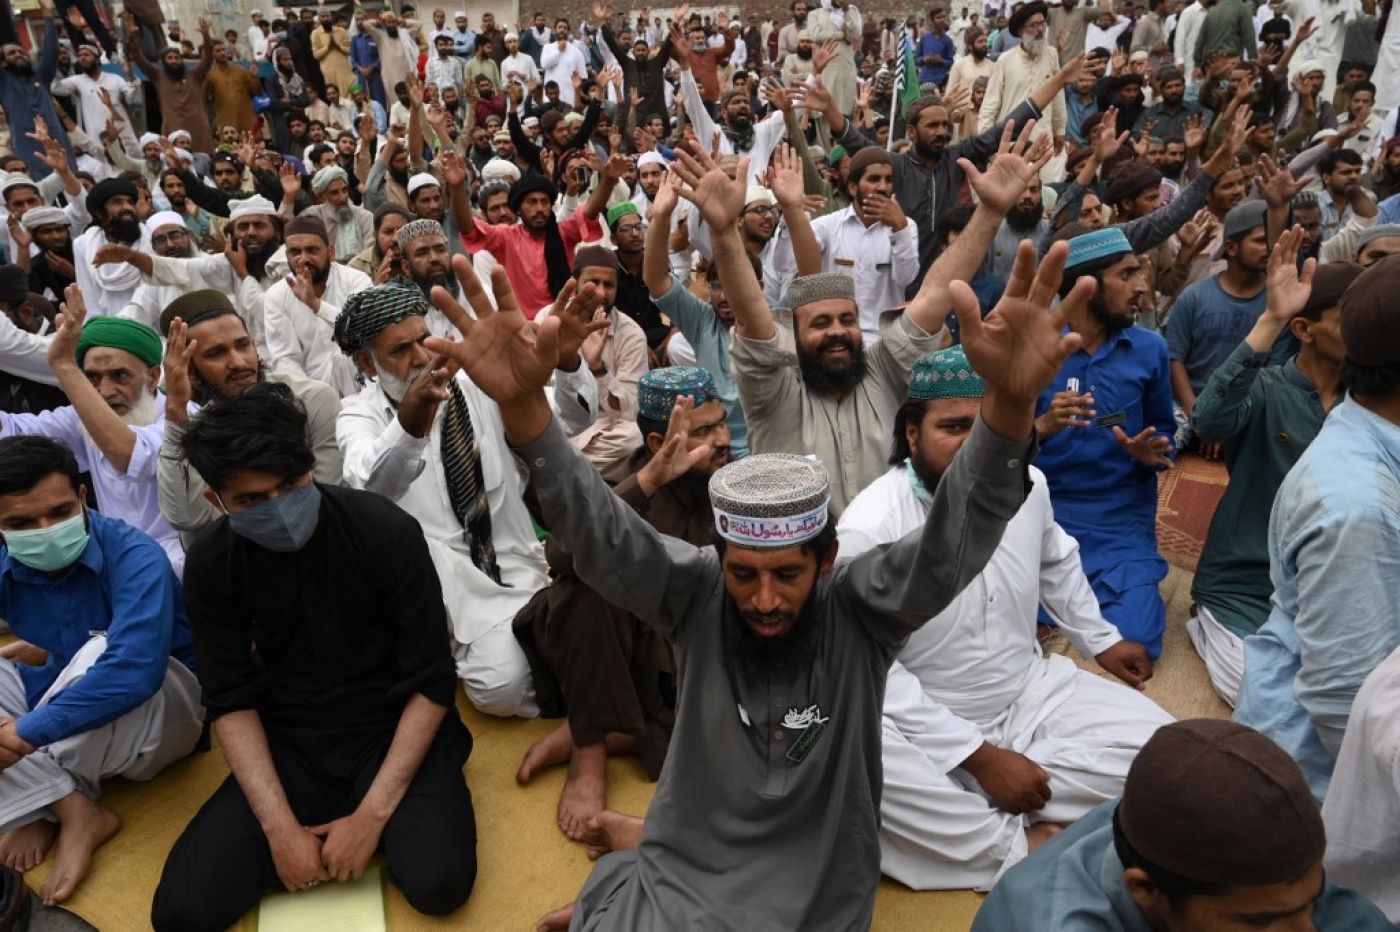 Les partisans du Tehreek-e-Labbaik Pakistan (TLP, islamiste radical) scandent des slogans lors d’une manifestation après l’arrestation de leur chef à la suite de ses appels à l’expulsion de l’ambassadeur de France, à Lahore, le 16 avril 2021 (AFP)